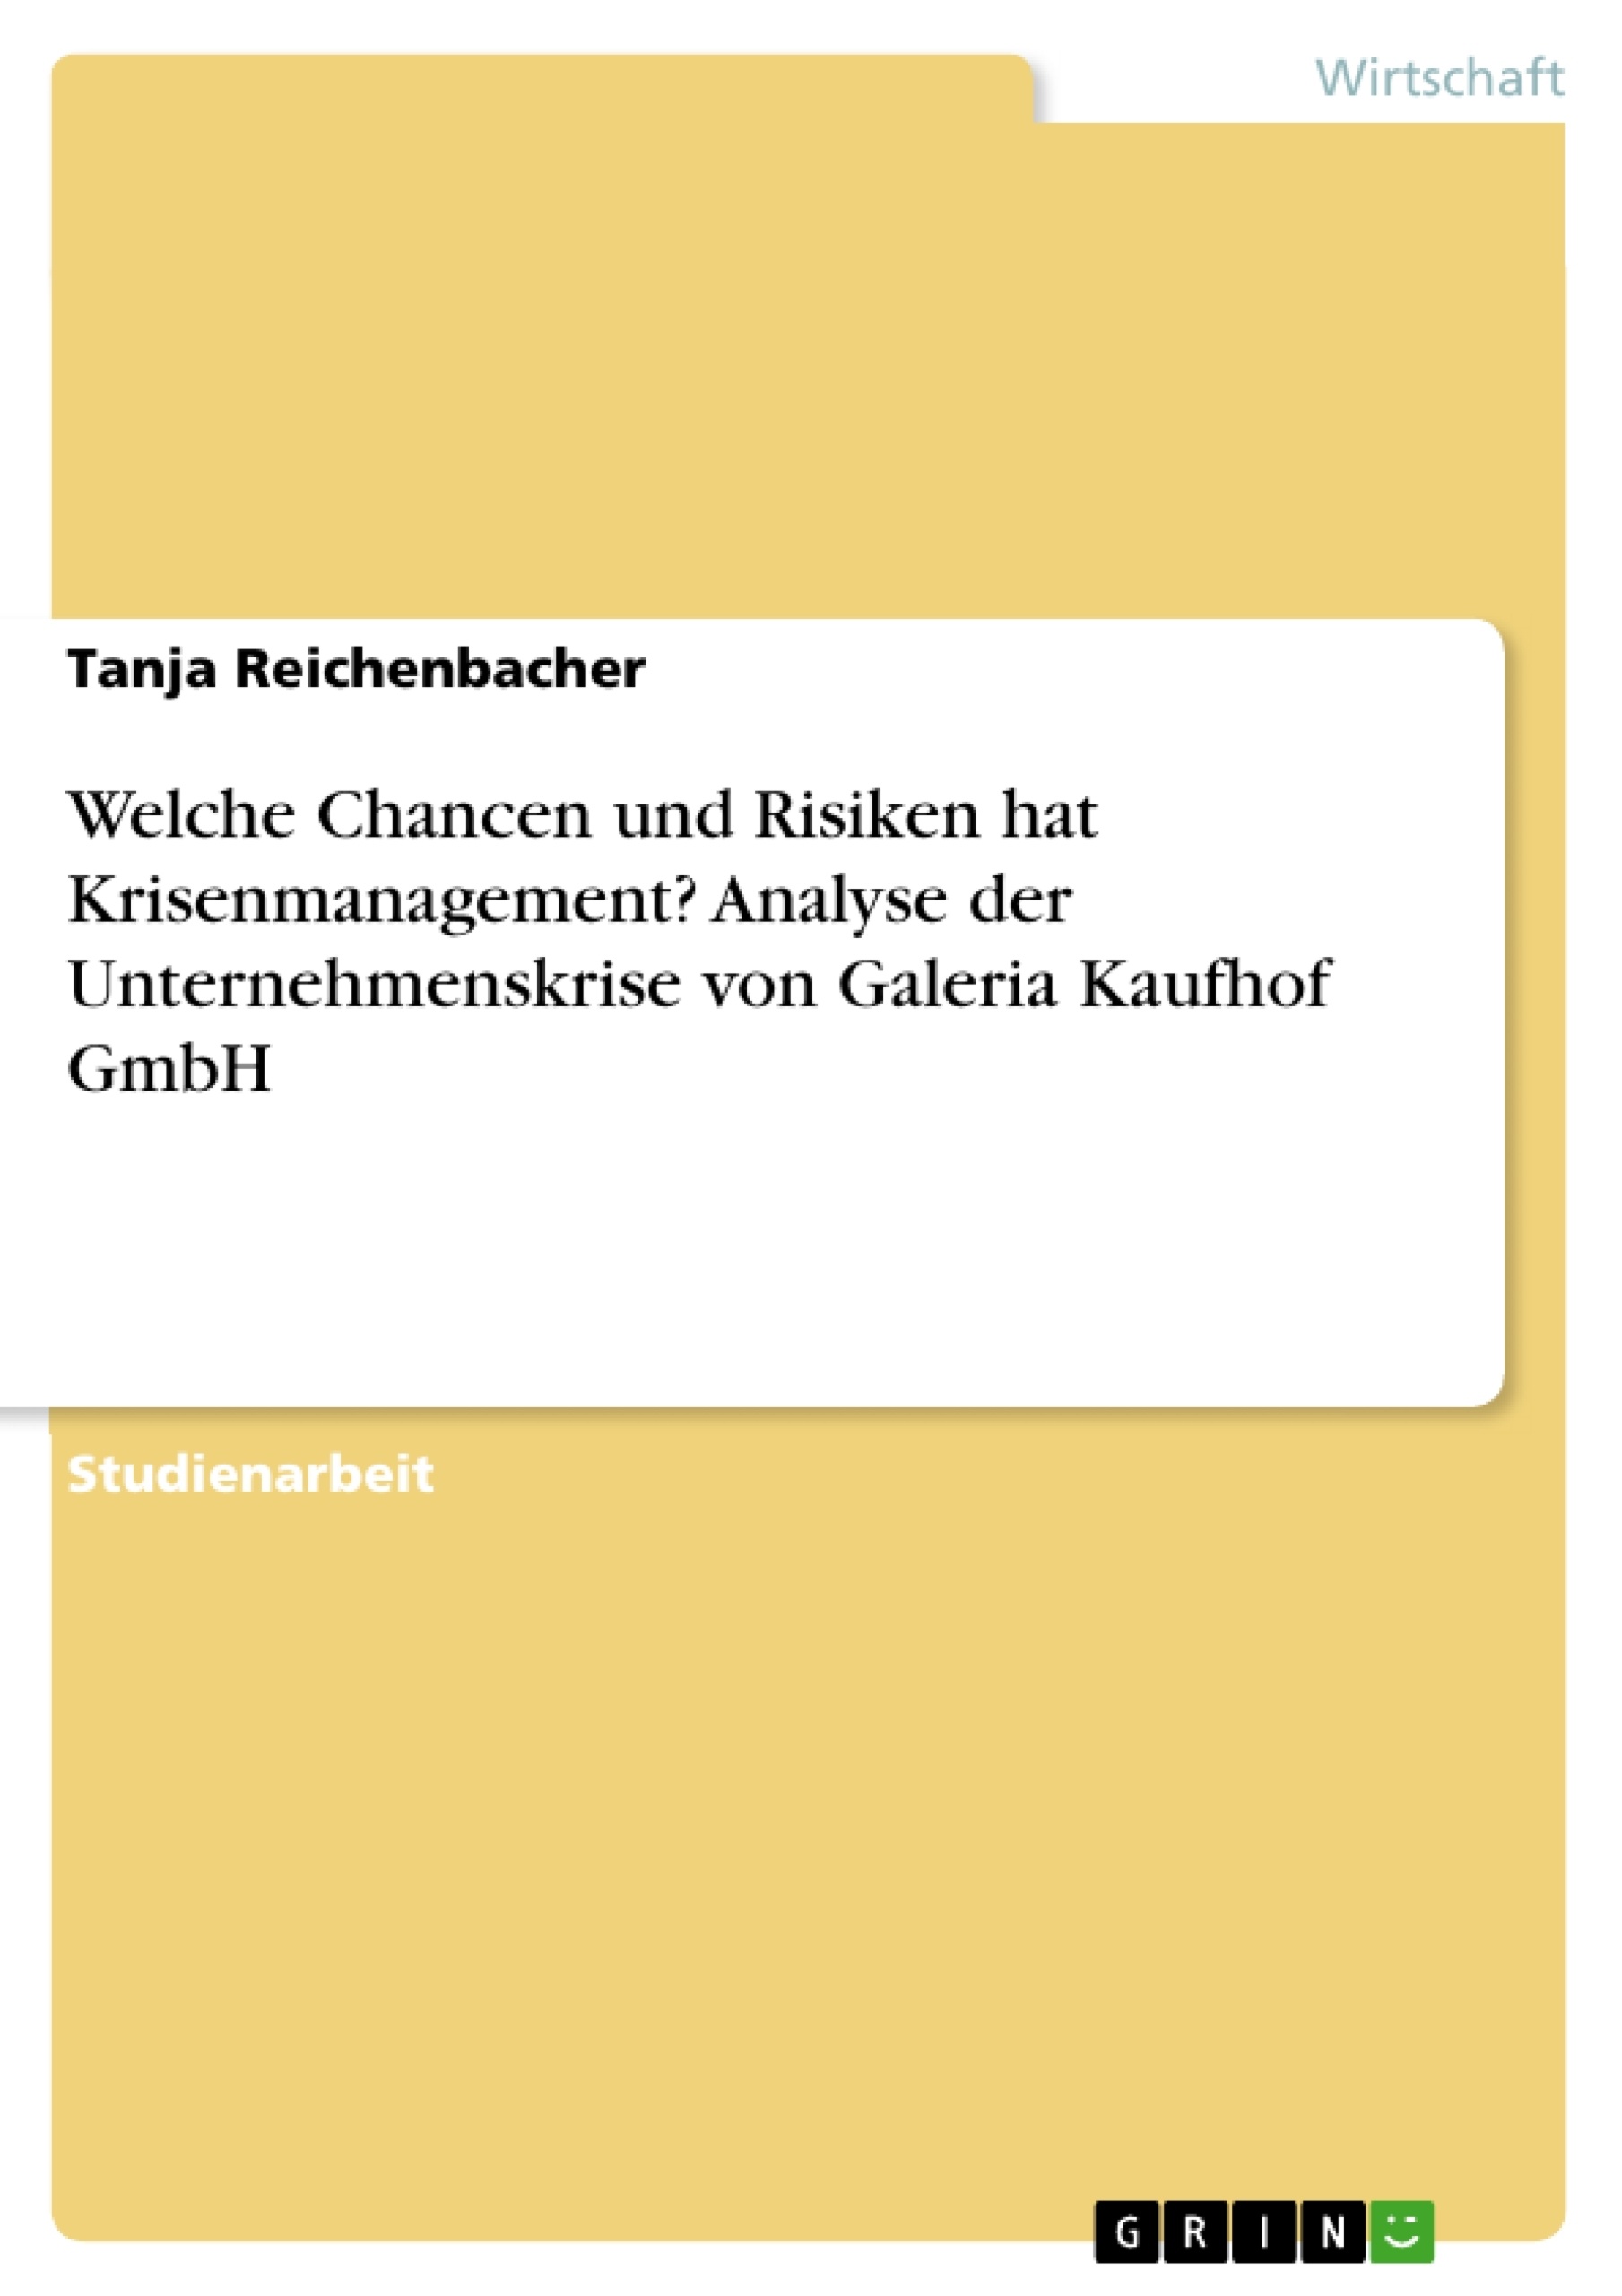 Título: Welche Chancen und Risiken hat Krisenmanagement? Analyse der Unternehmenskrise von Galeria Kaufhof GmbH